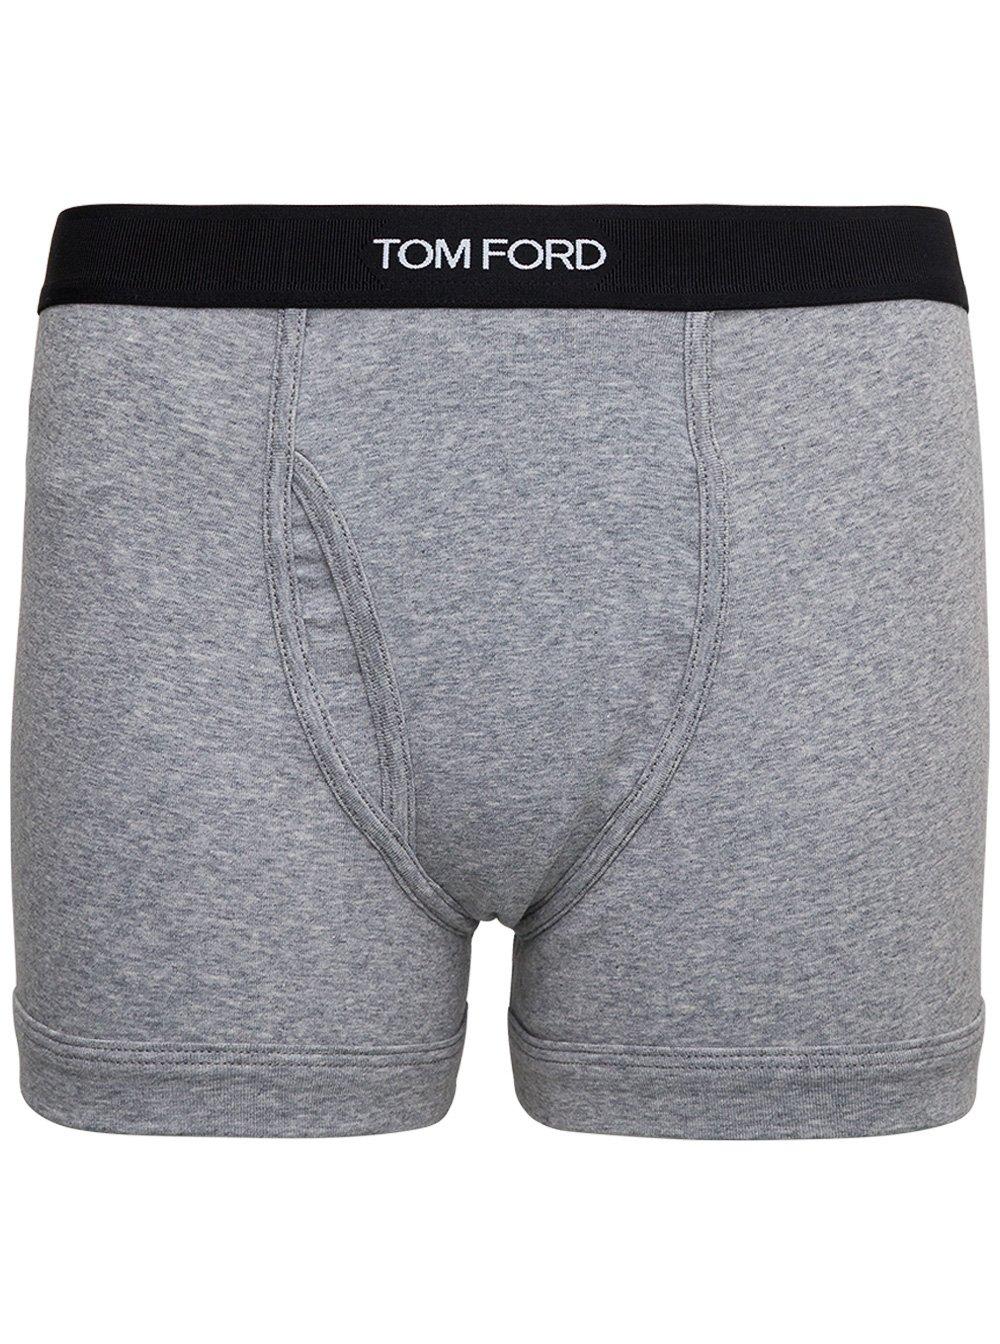 Tom Ford Logo Waistband Boxer Briefs